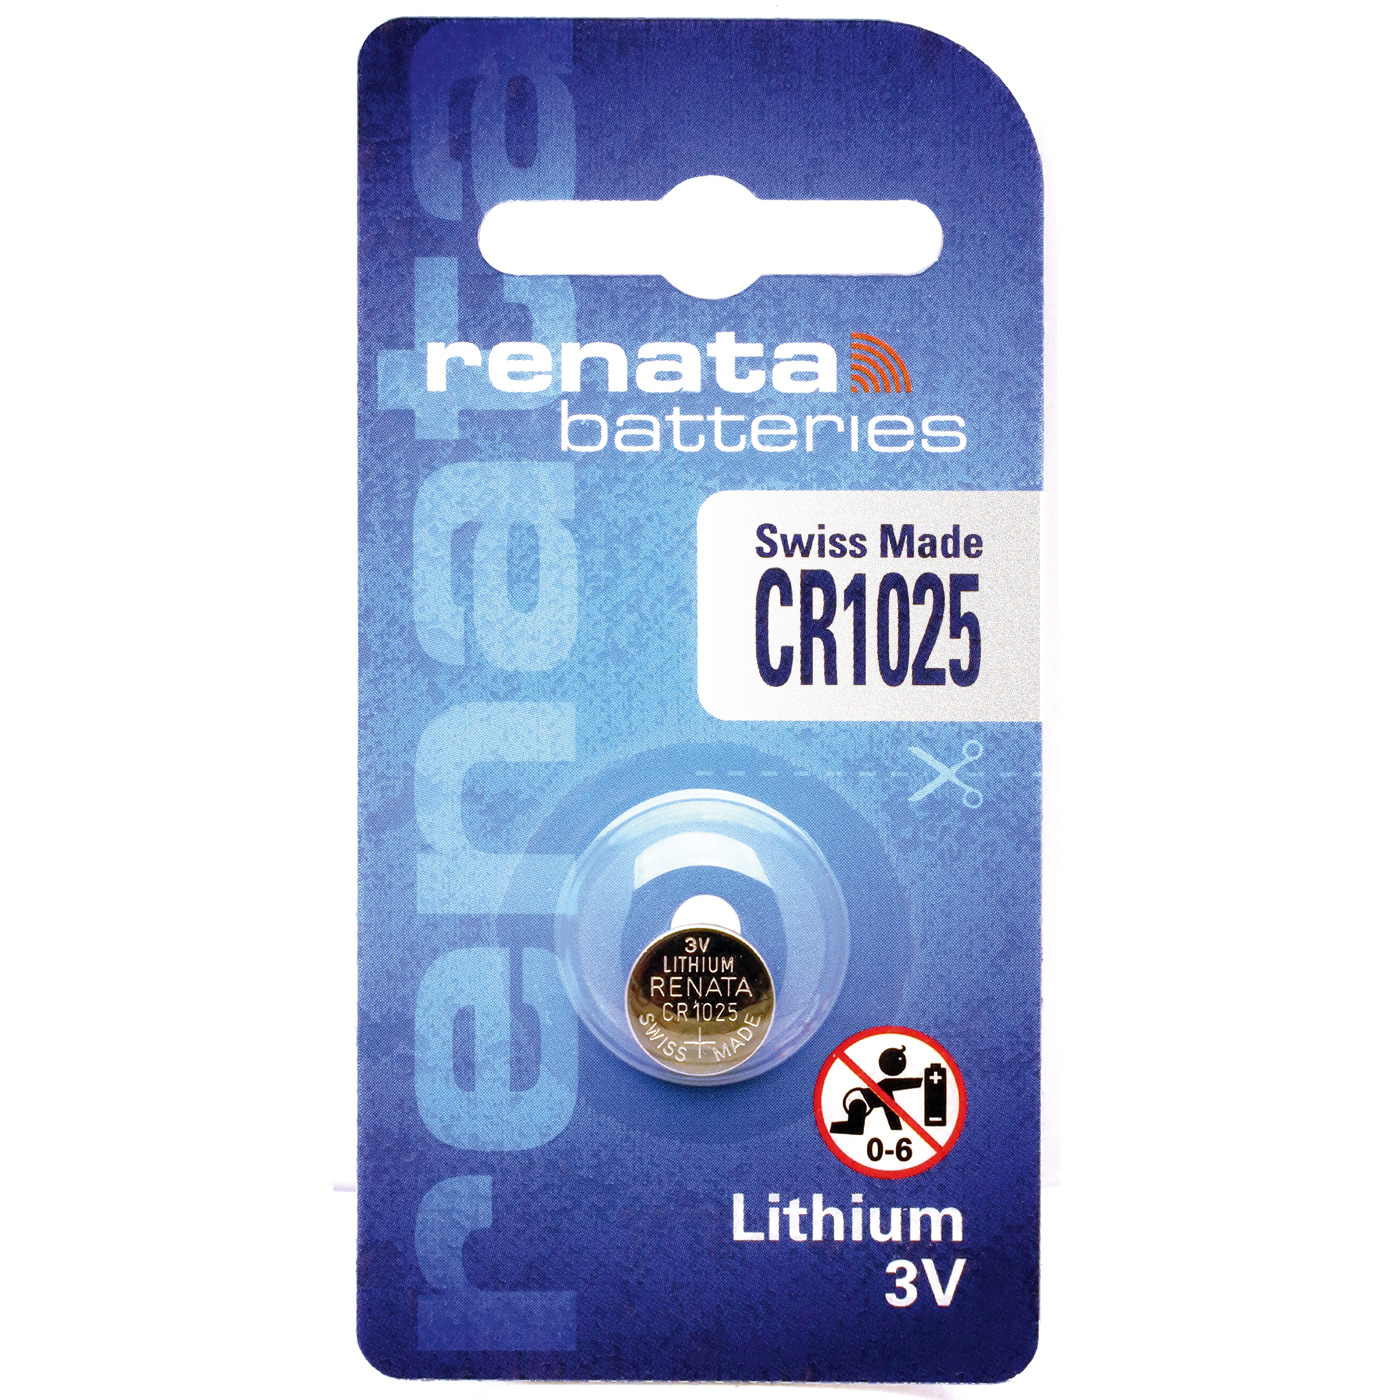 Renata CR 1025 lithium